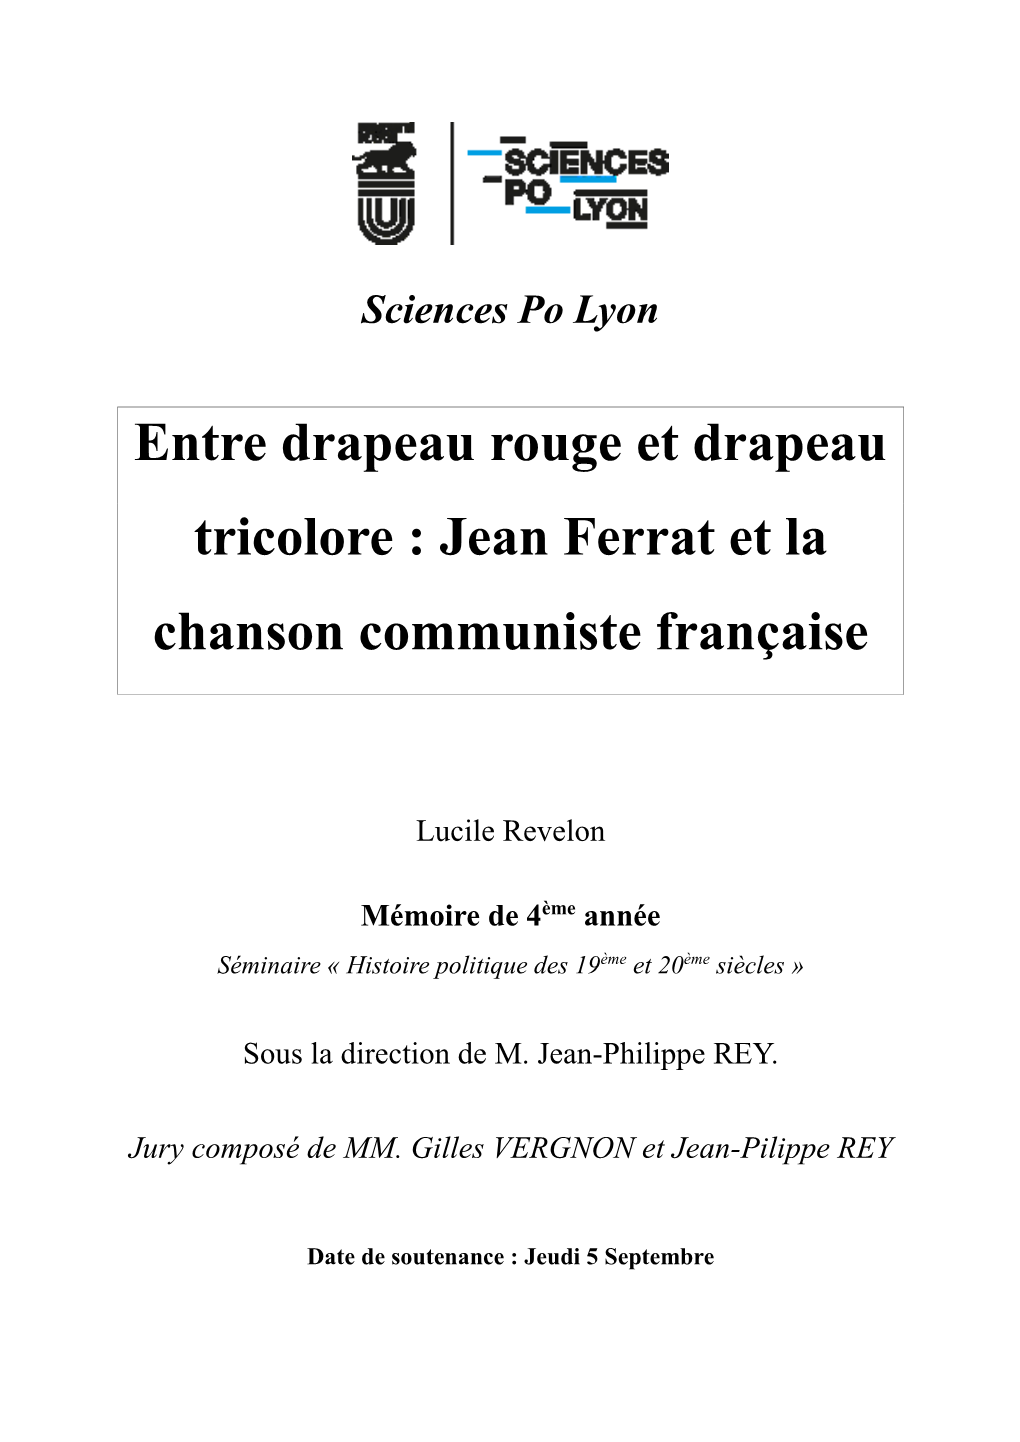 Jean Ferrat Et La Chanson Communiste Française